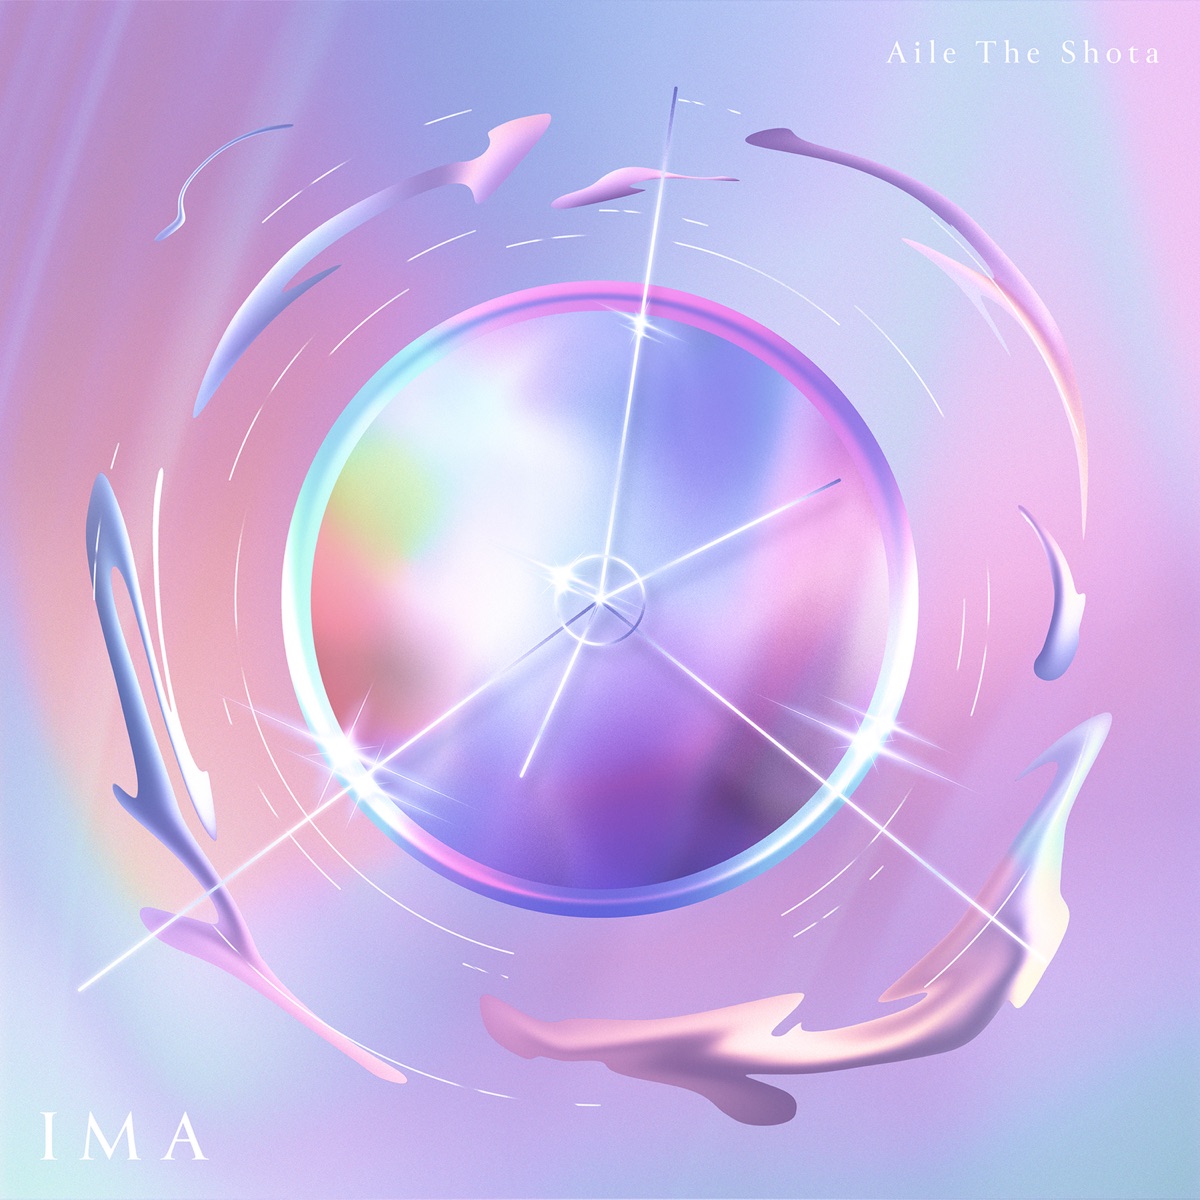 『Aile The Shota - so so good feat. Ma-Nu 歌詞』収録の『IMA』ジャケット